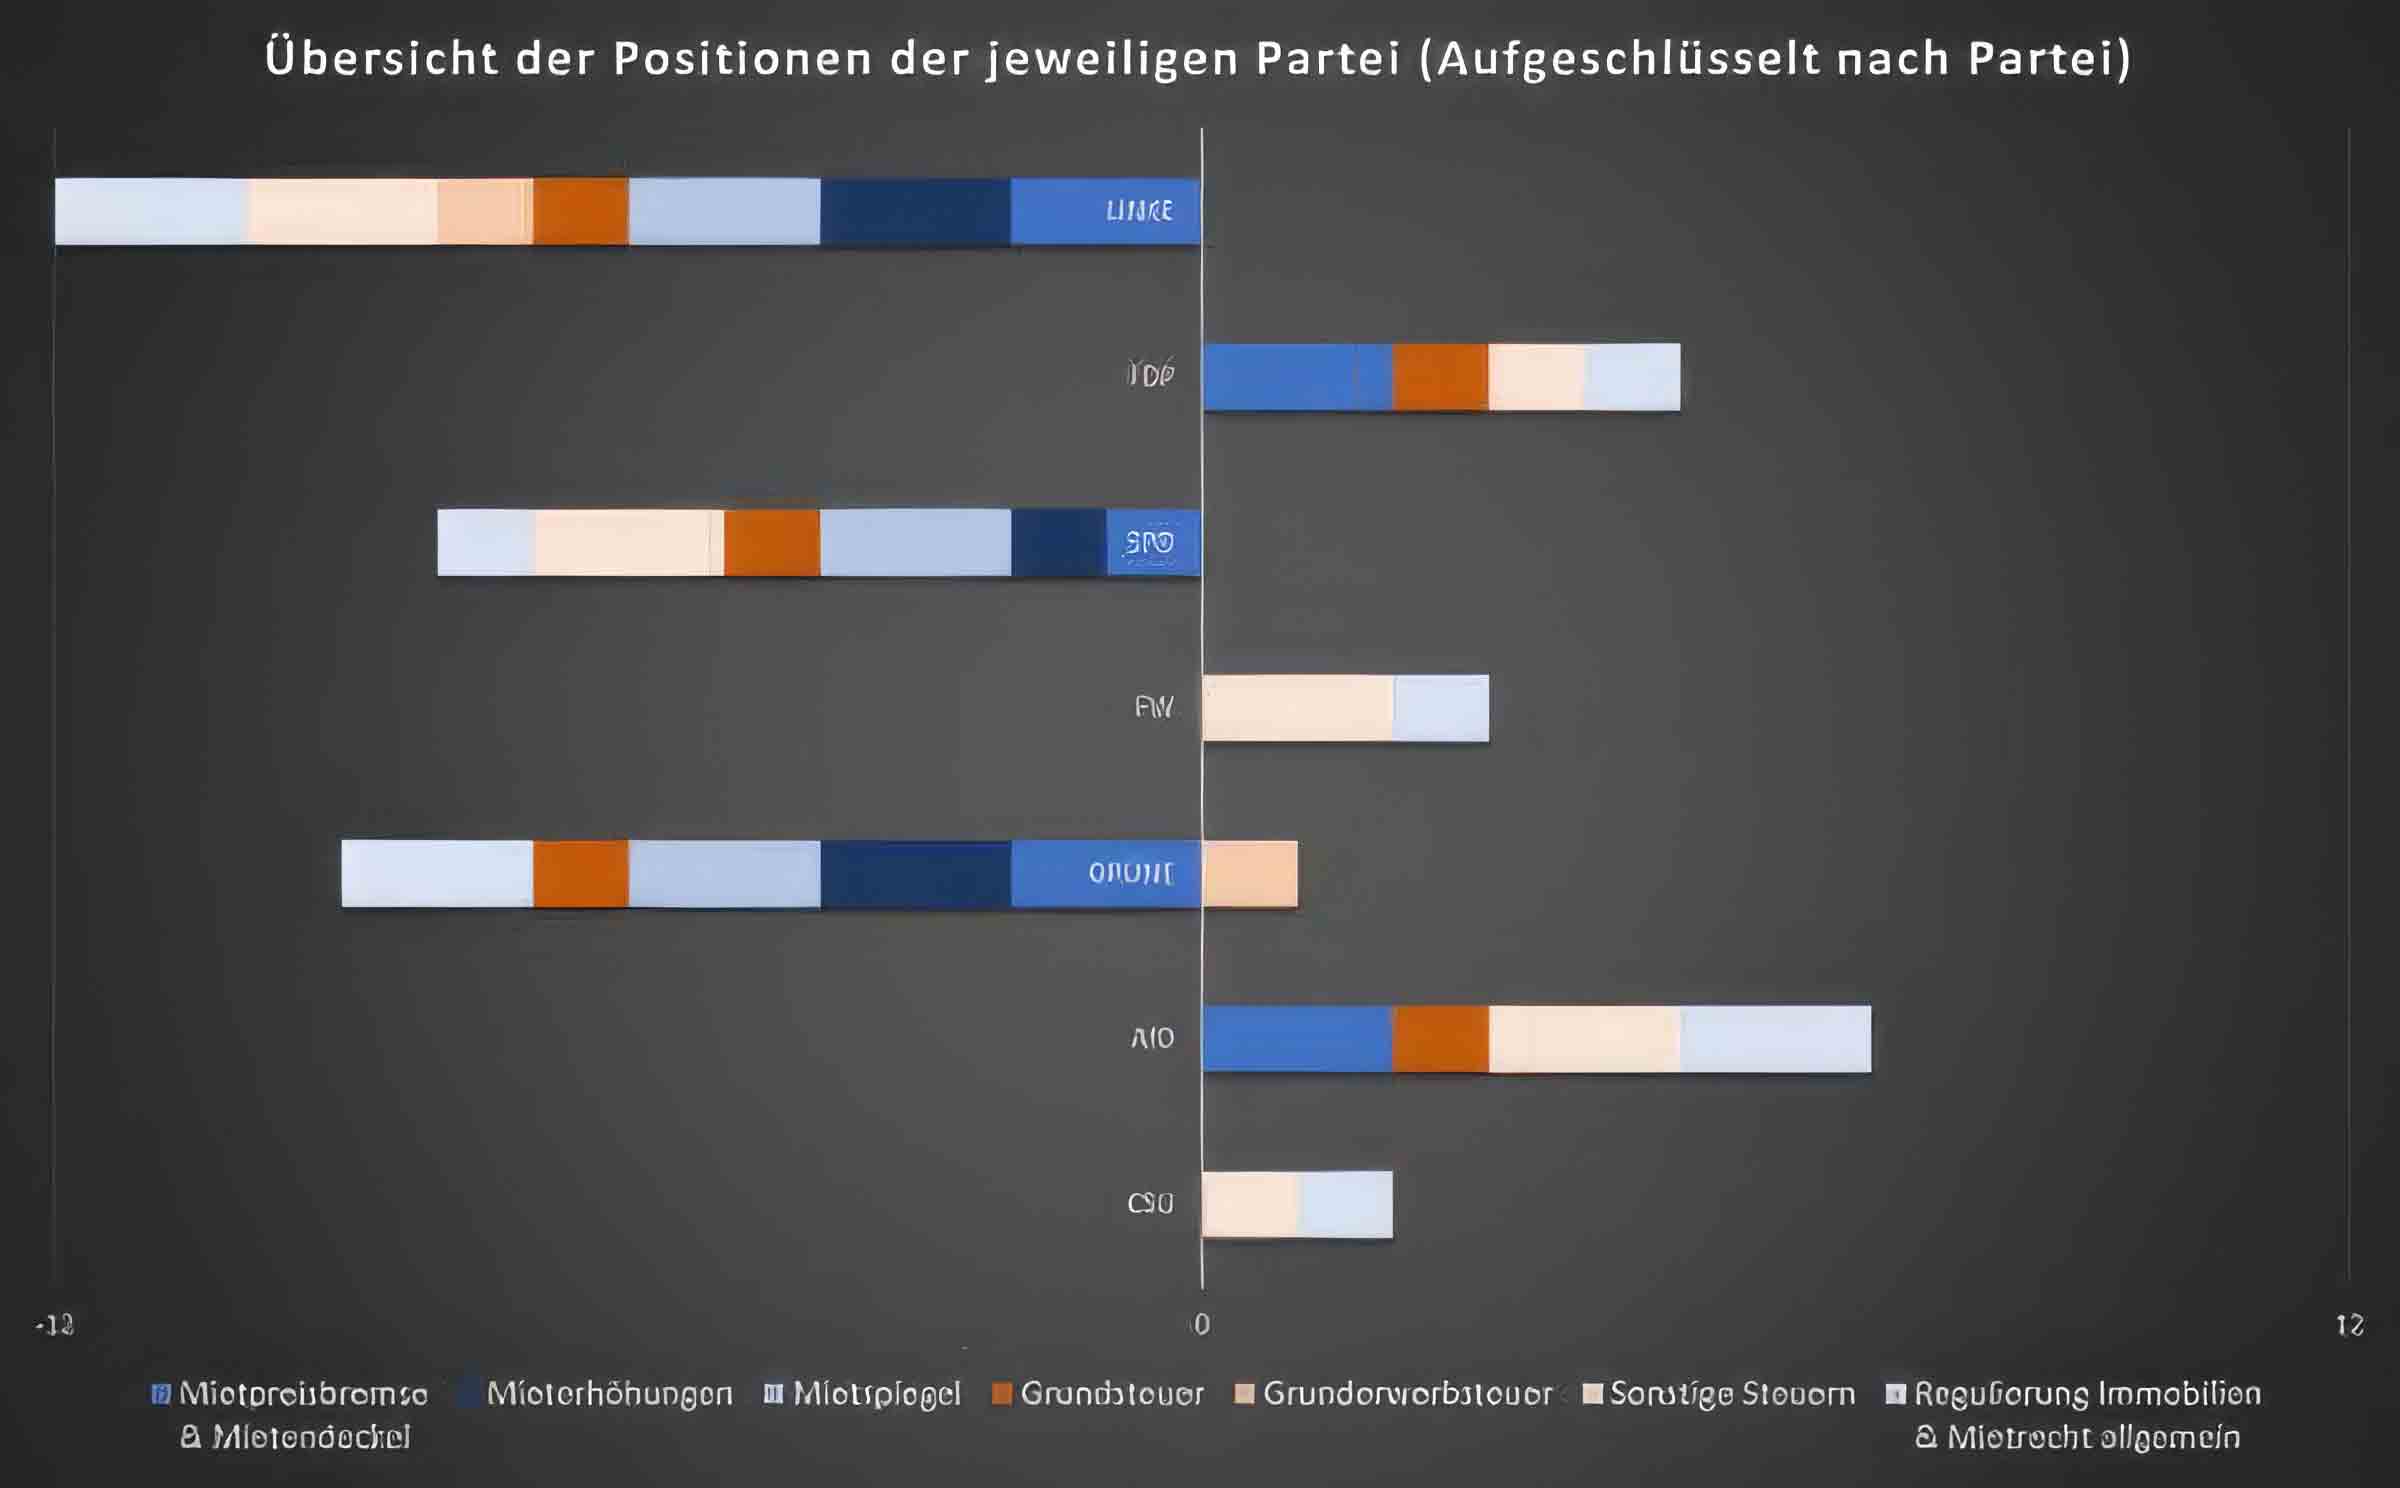 Analyse der Landtagswahlprogramme: unterschiedliche Positionen der Parteien zu Immobilien